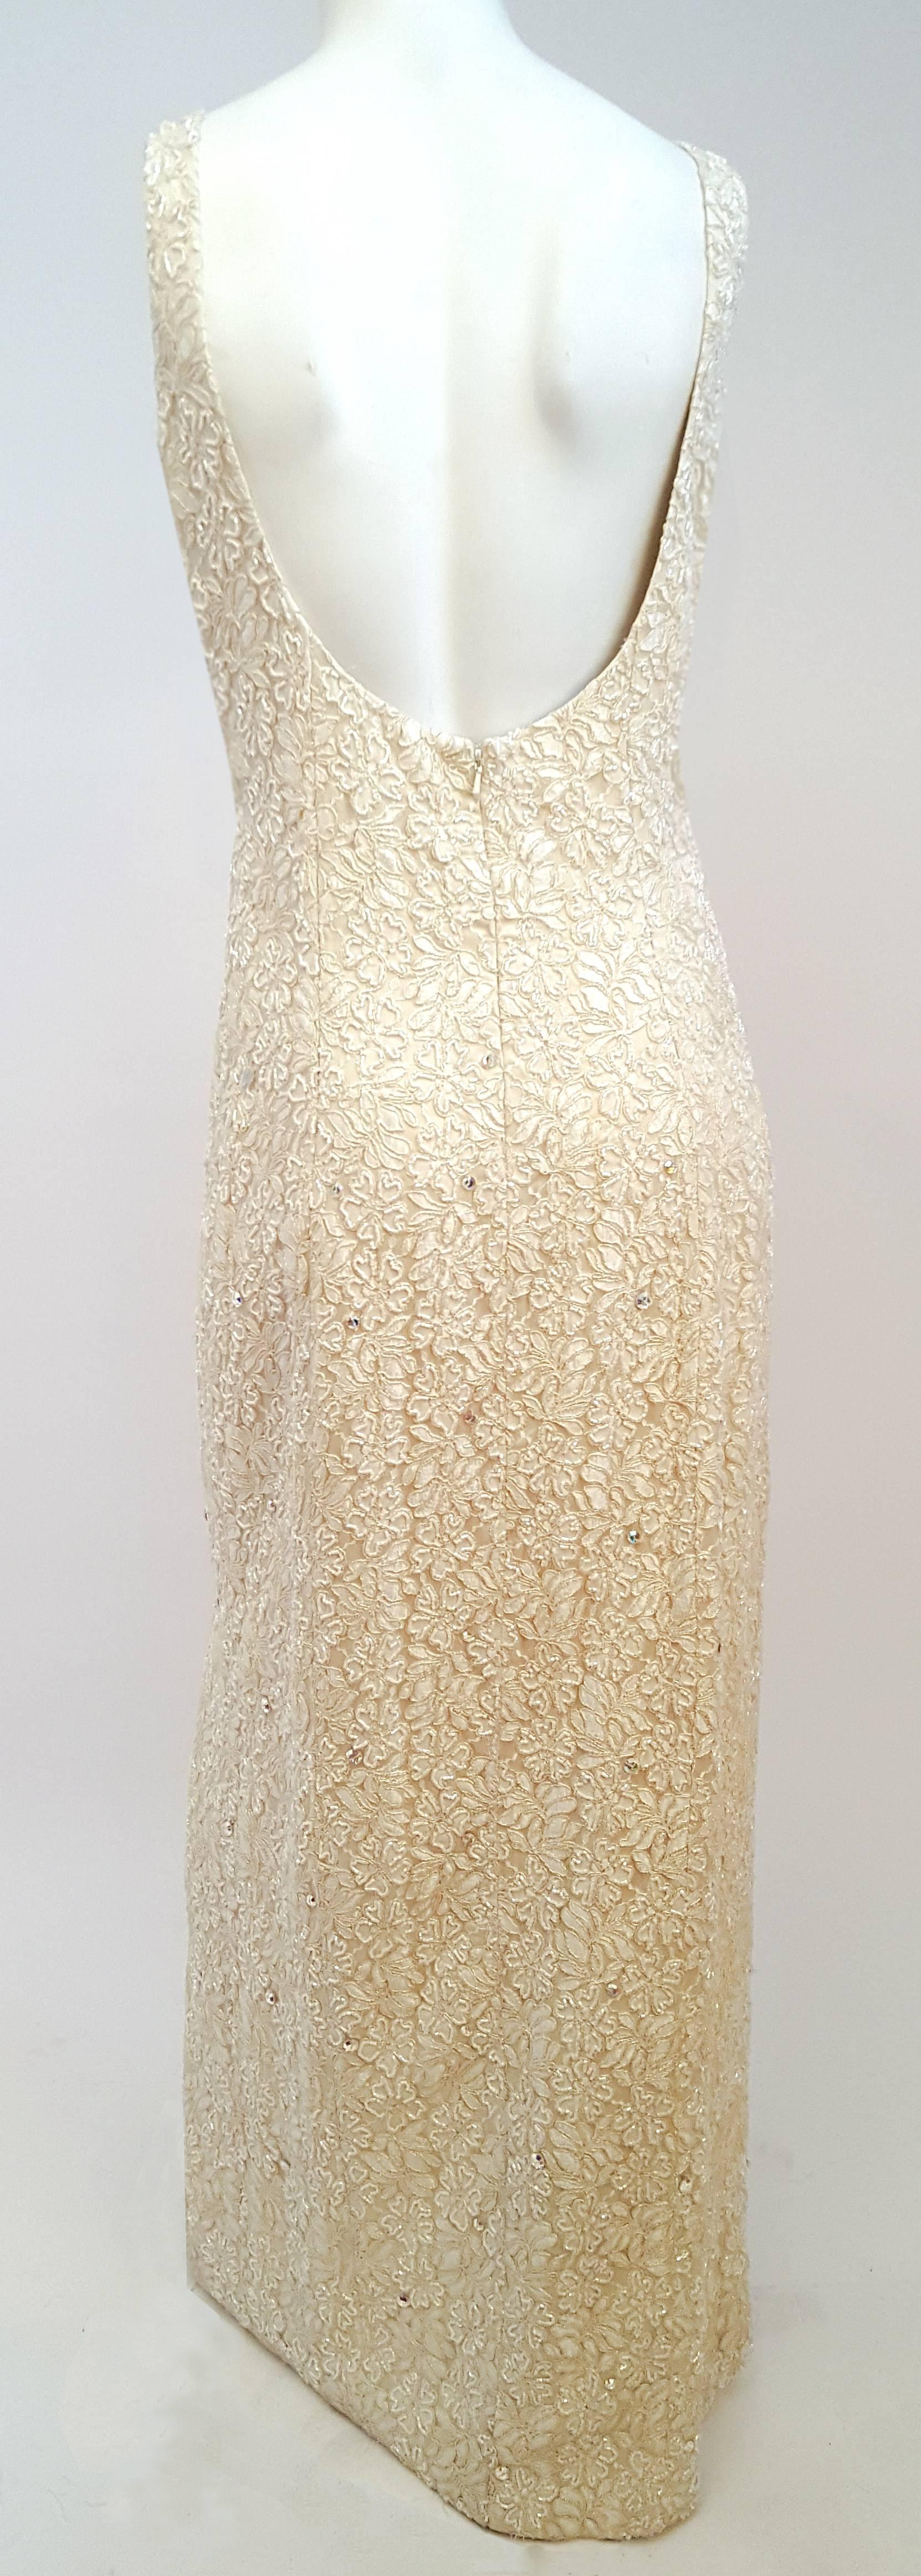 1990s Ivory Beaded Bolero and Evening Dress Set. Lace dress is fully embellished with beading and aurora borealis rhinestones. One leg side slit. Back zipper closure.